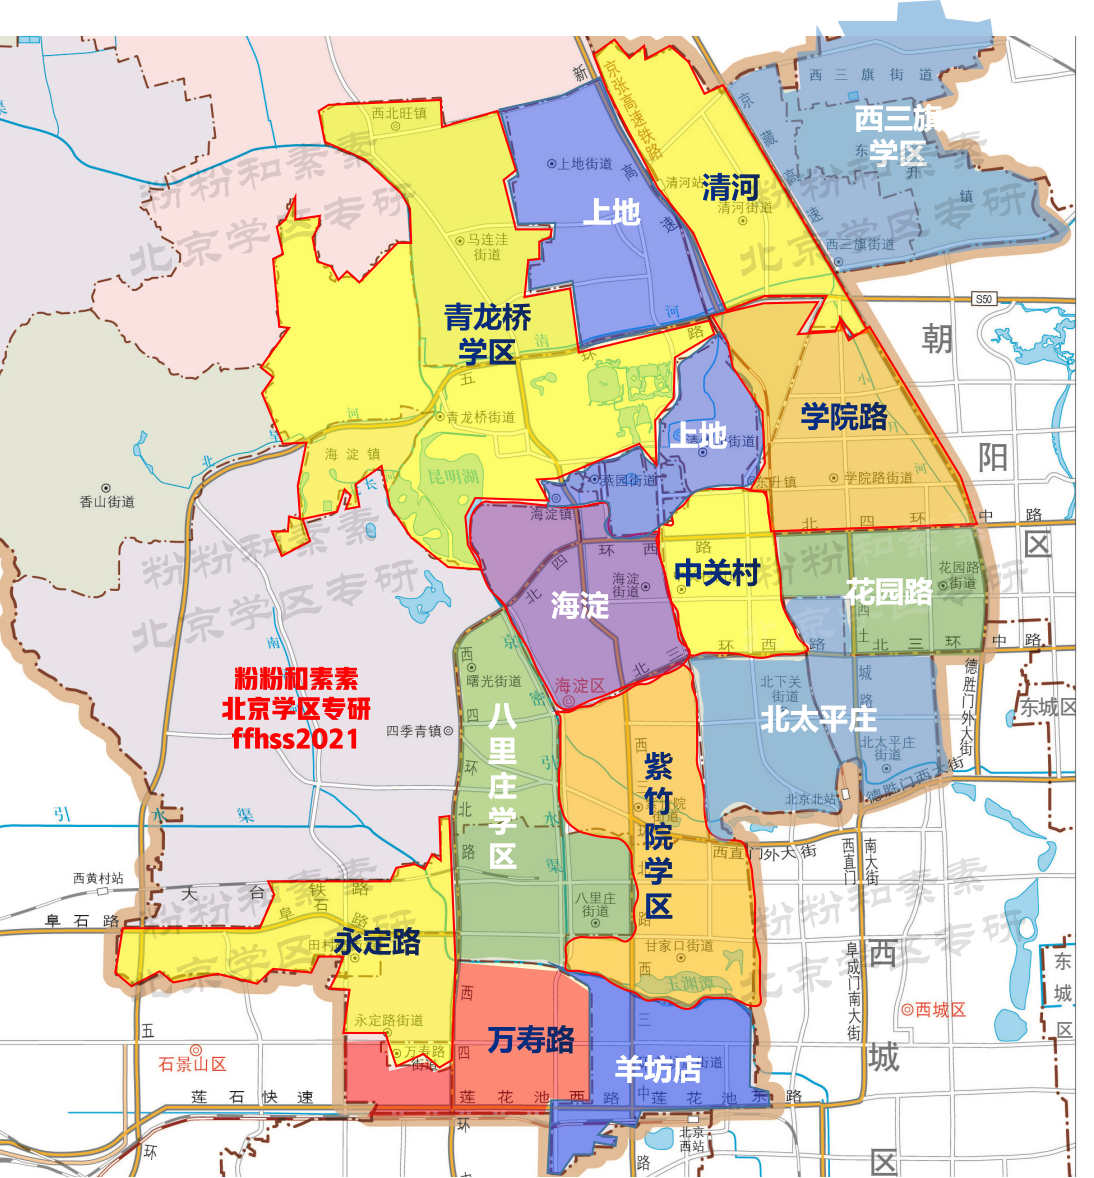 北京海淀学区划分街道地图学区划分